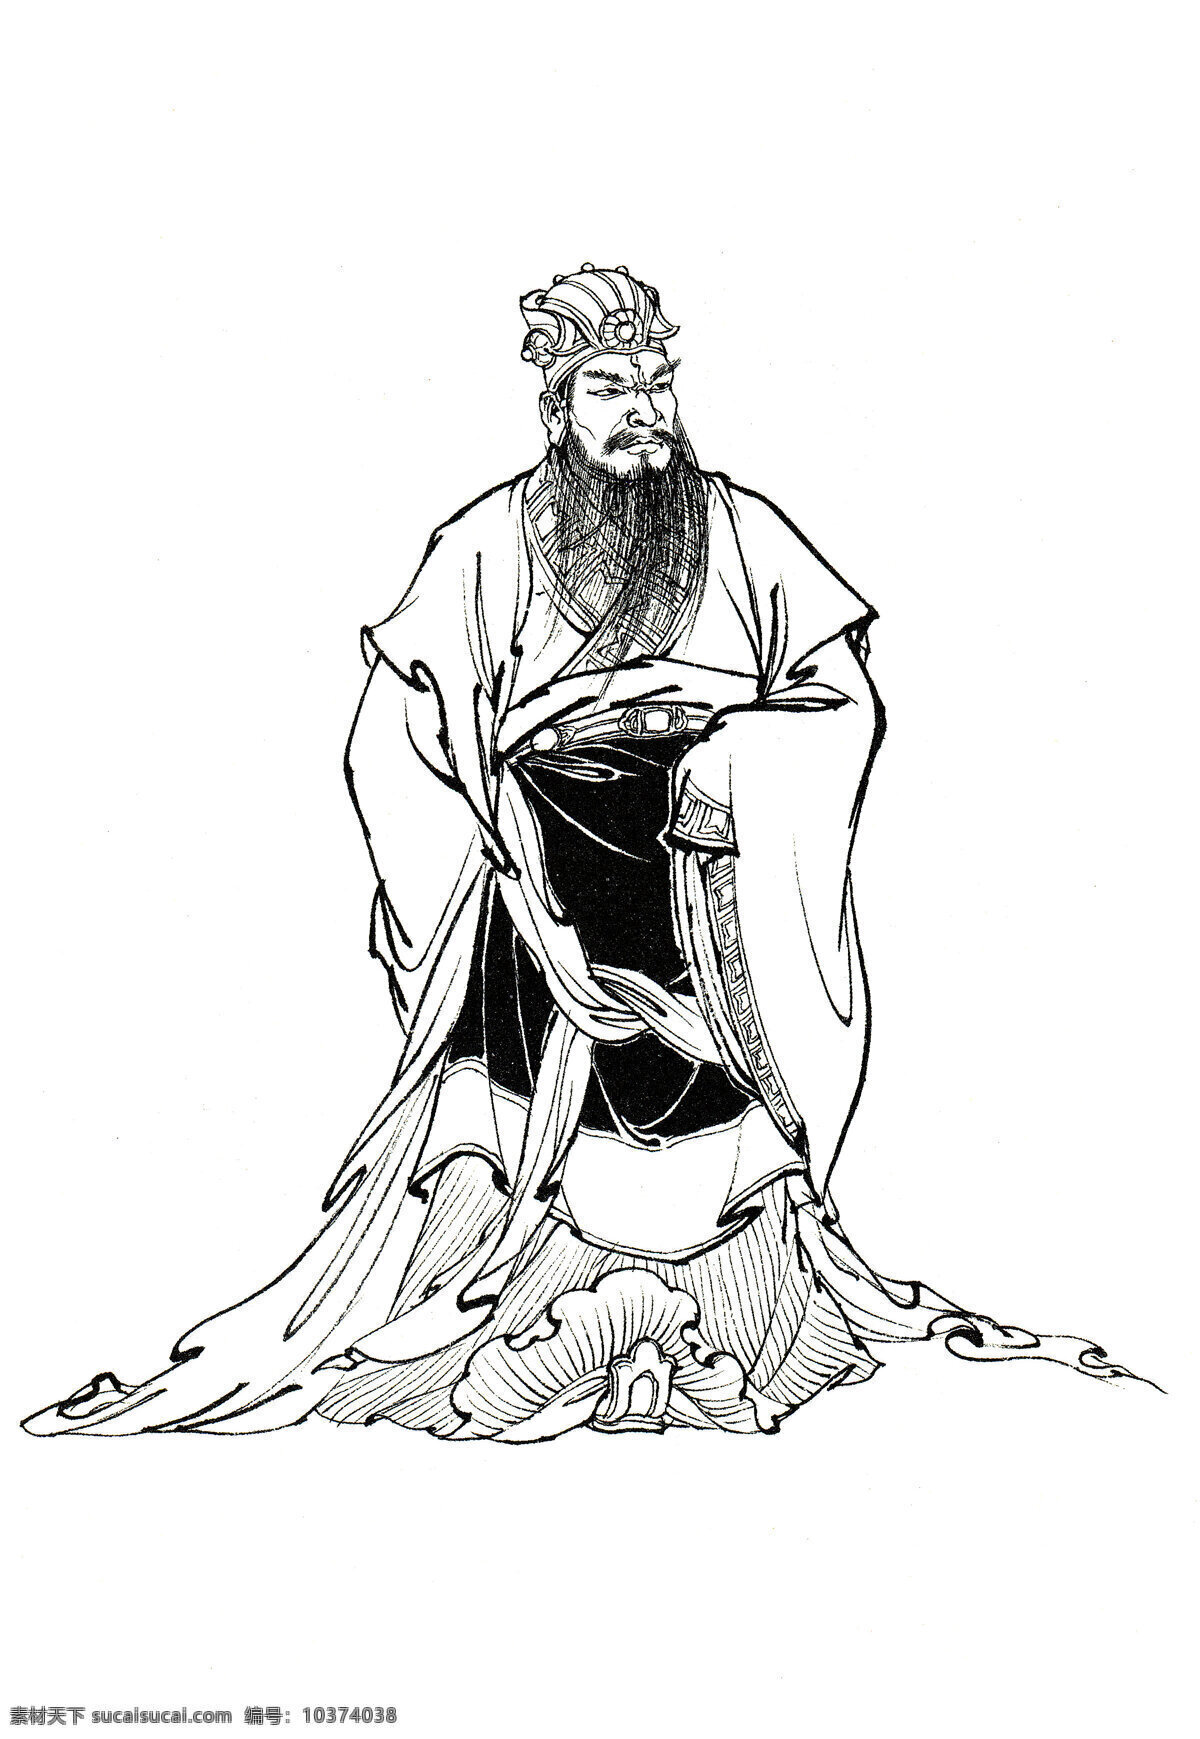 西游记 人物 白描 十殿阎王 阎罗王 神话人物 李 云中 文化艺术 绘画书法